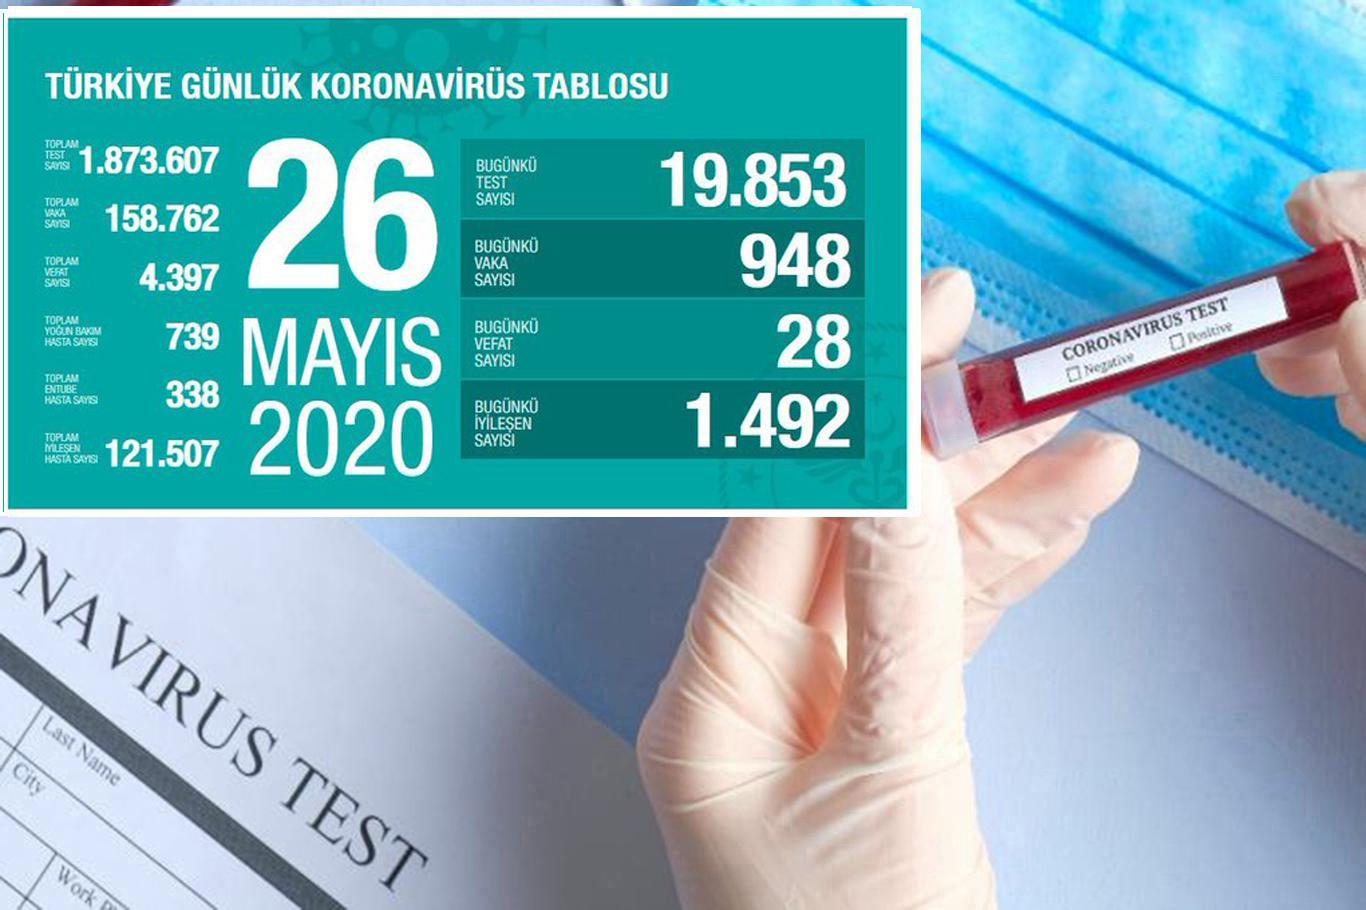 Turkey’s death toll from coronavirus reaches 4,397